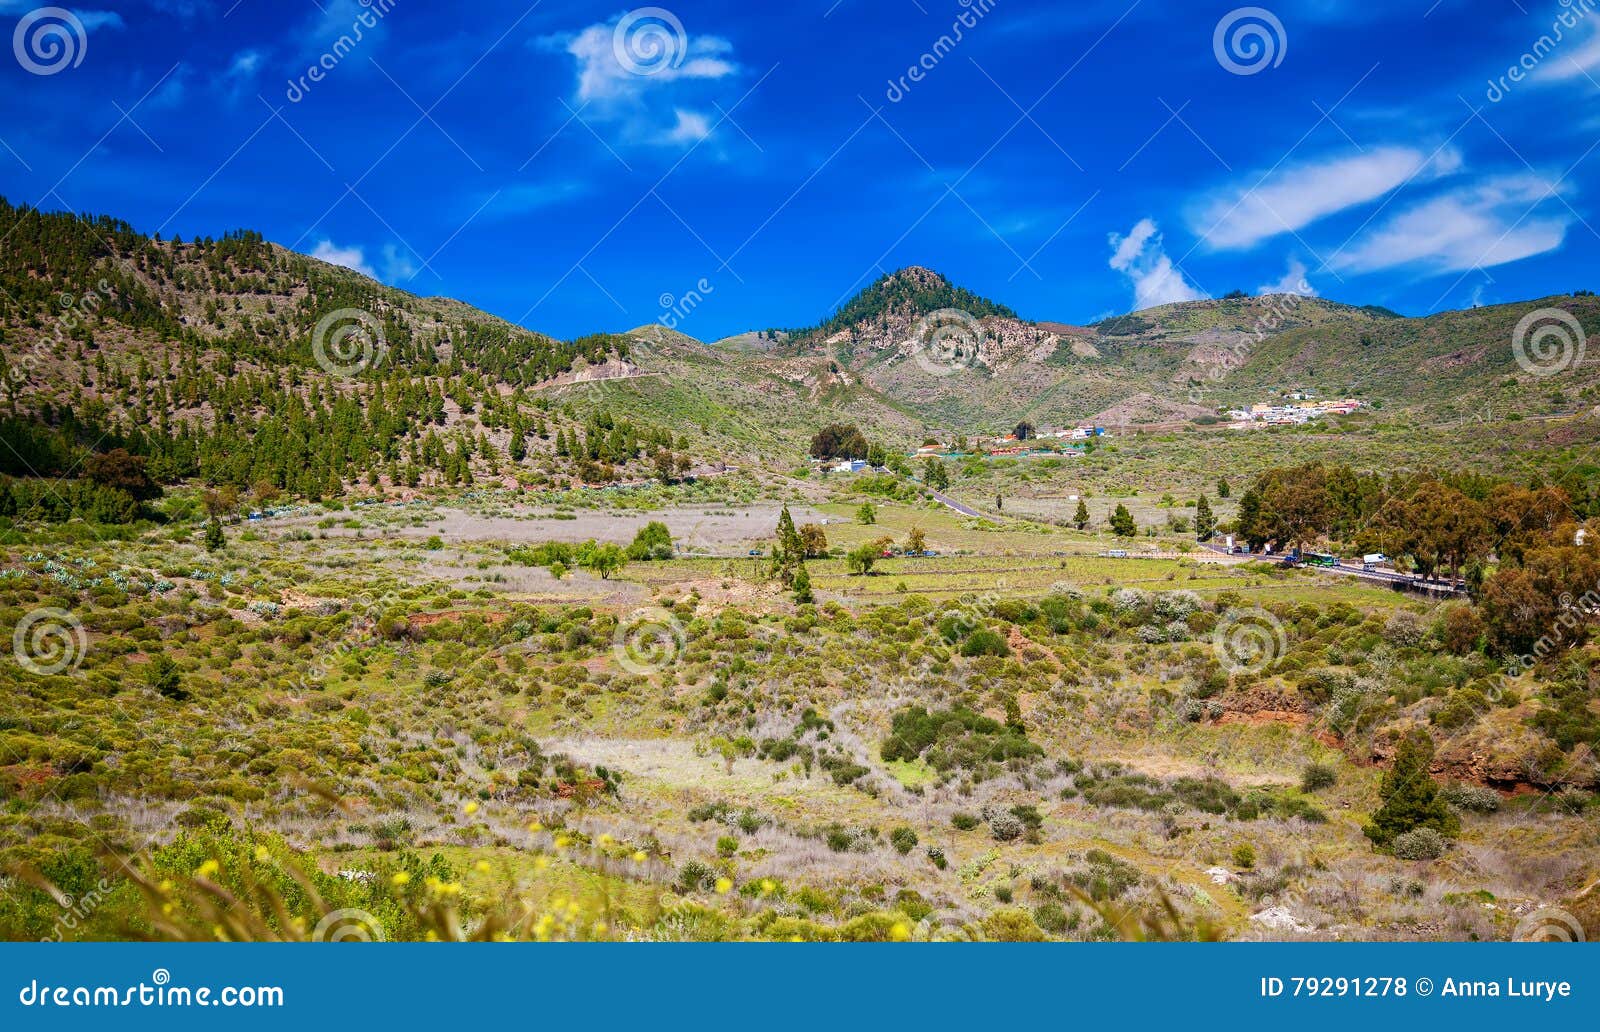 view of valle de arriba